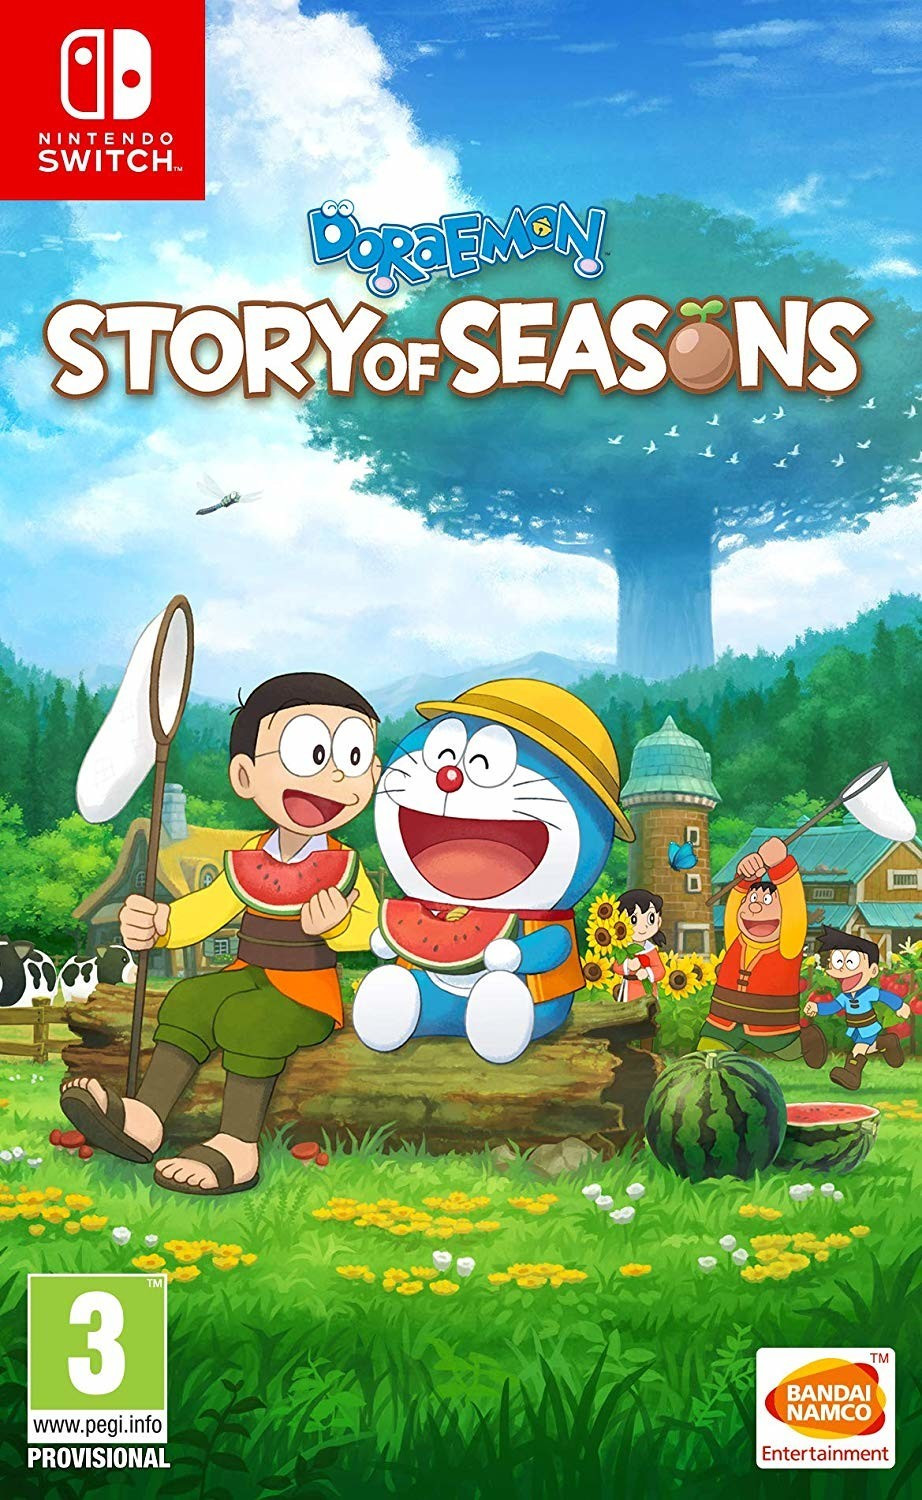 Photos - Game Bandai Namco Entertainment Doraemon: Story of Seasons (Switch)